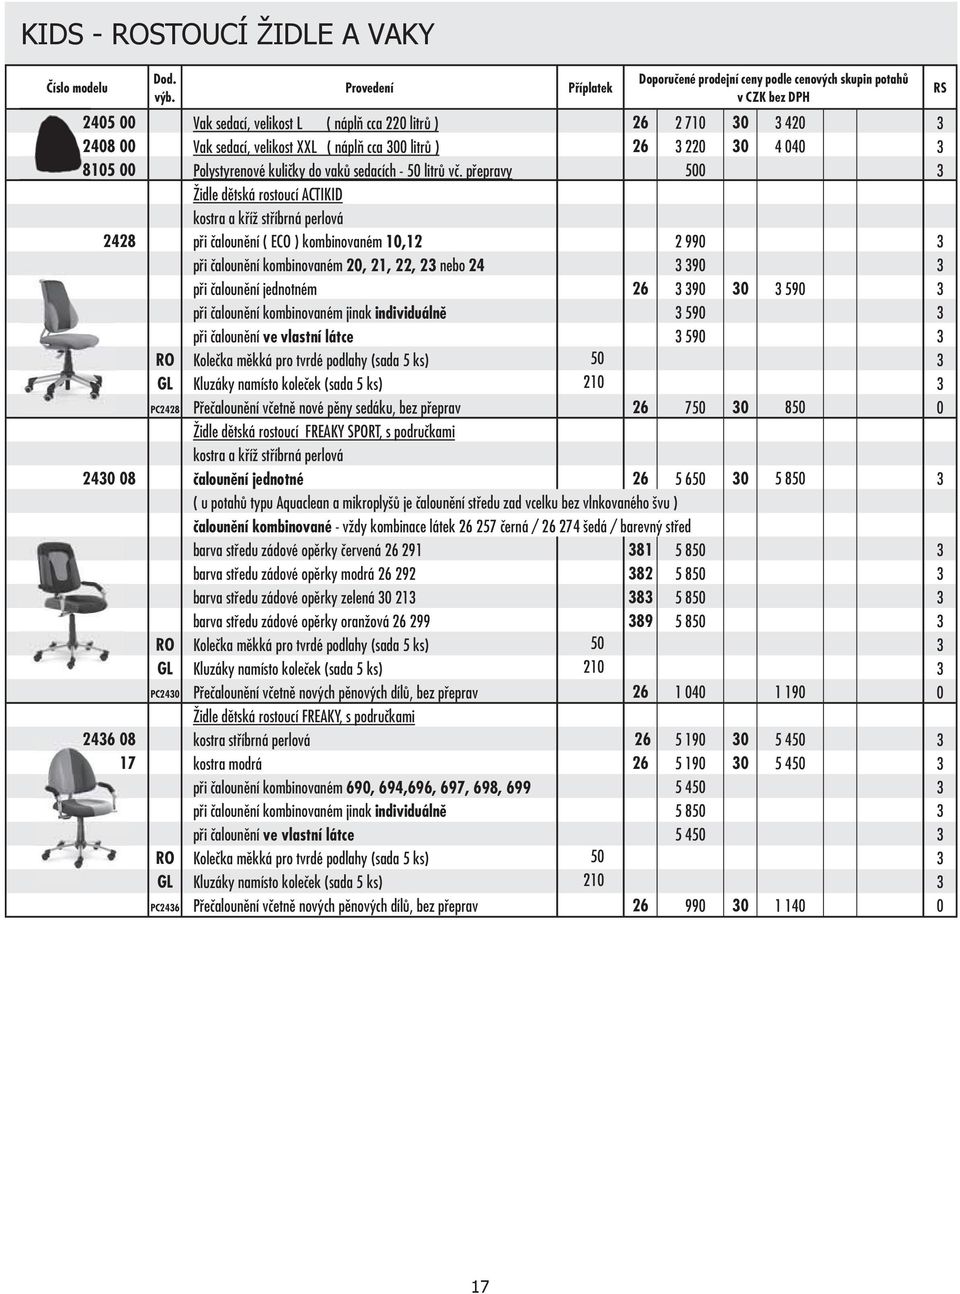 přepravy Židle dětská rostoucí CTIKID kostra a kříž stříbrná perlová při čalounění ( ECO ) kombinovaném 1,1 při čalounění kombinovaném, 1,, nebo 4 při čalounění jednotném při čalounění kombinovaném